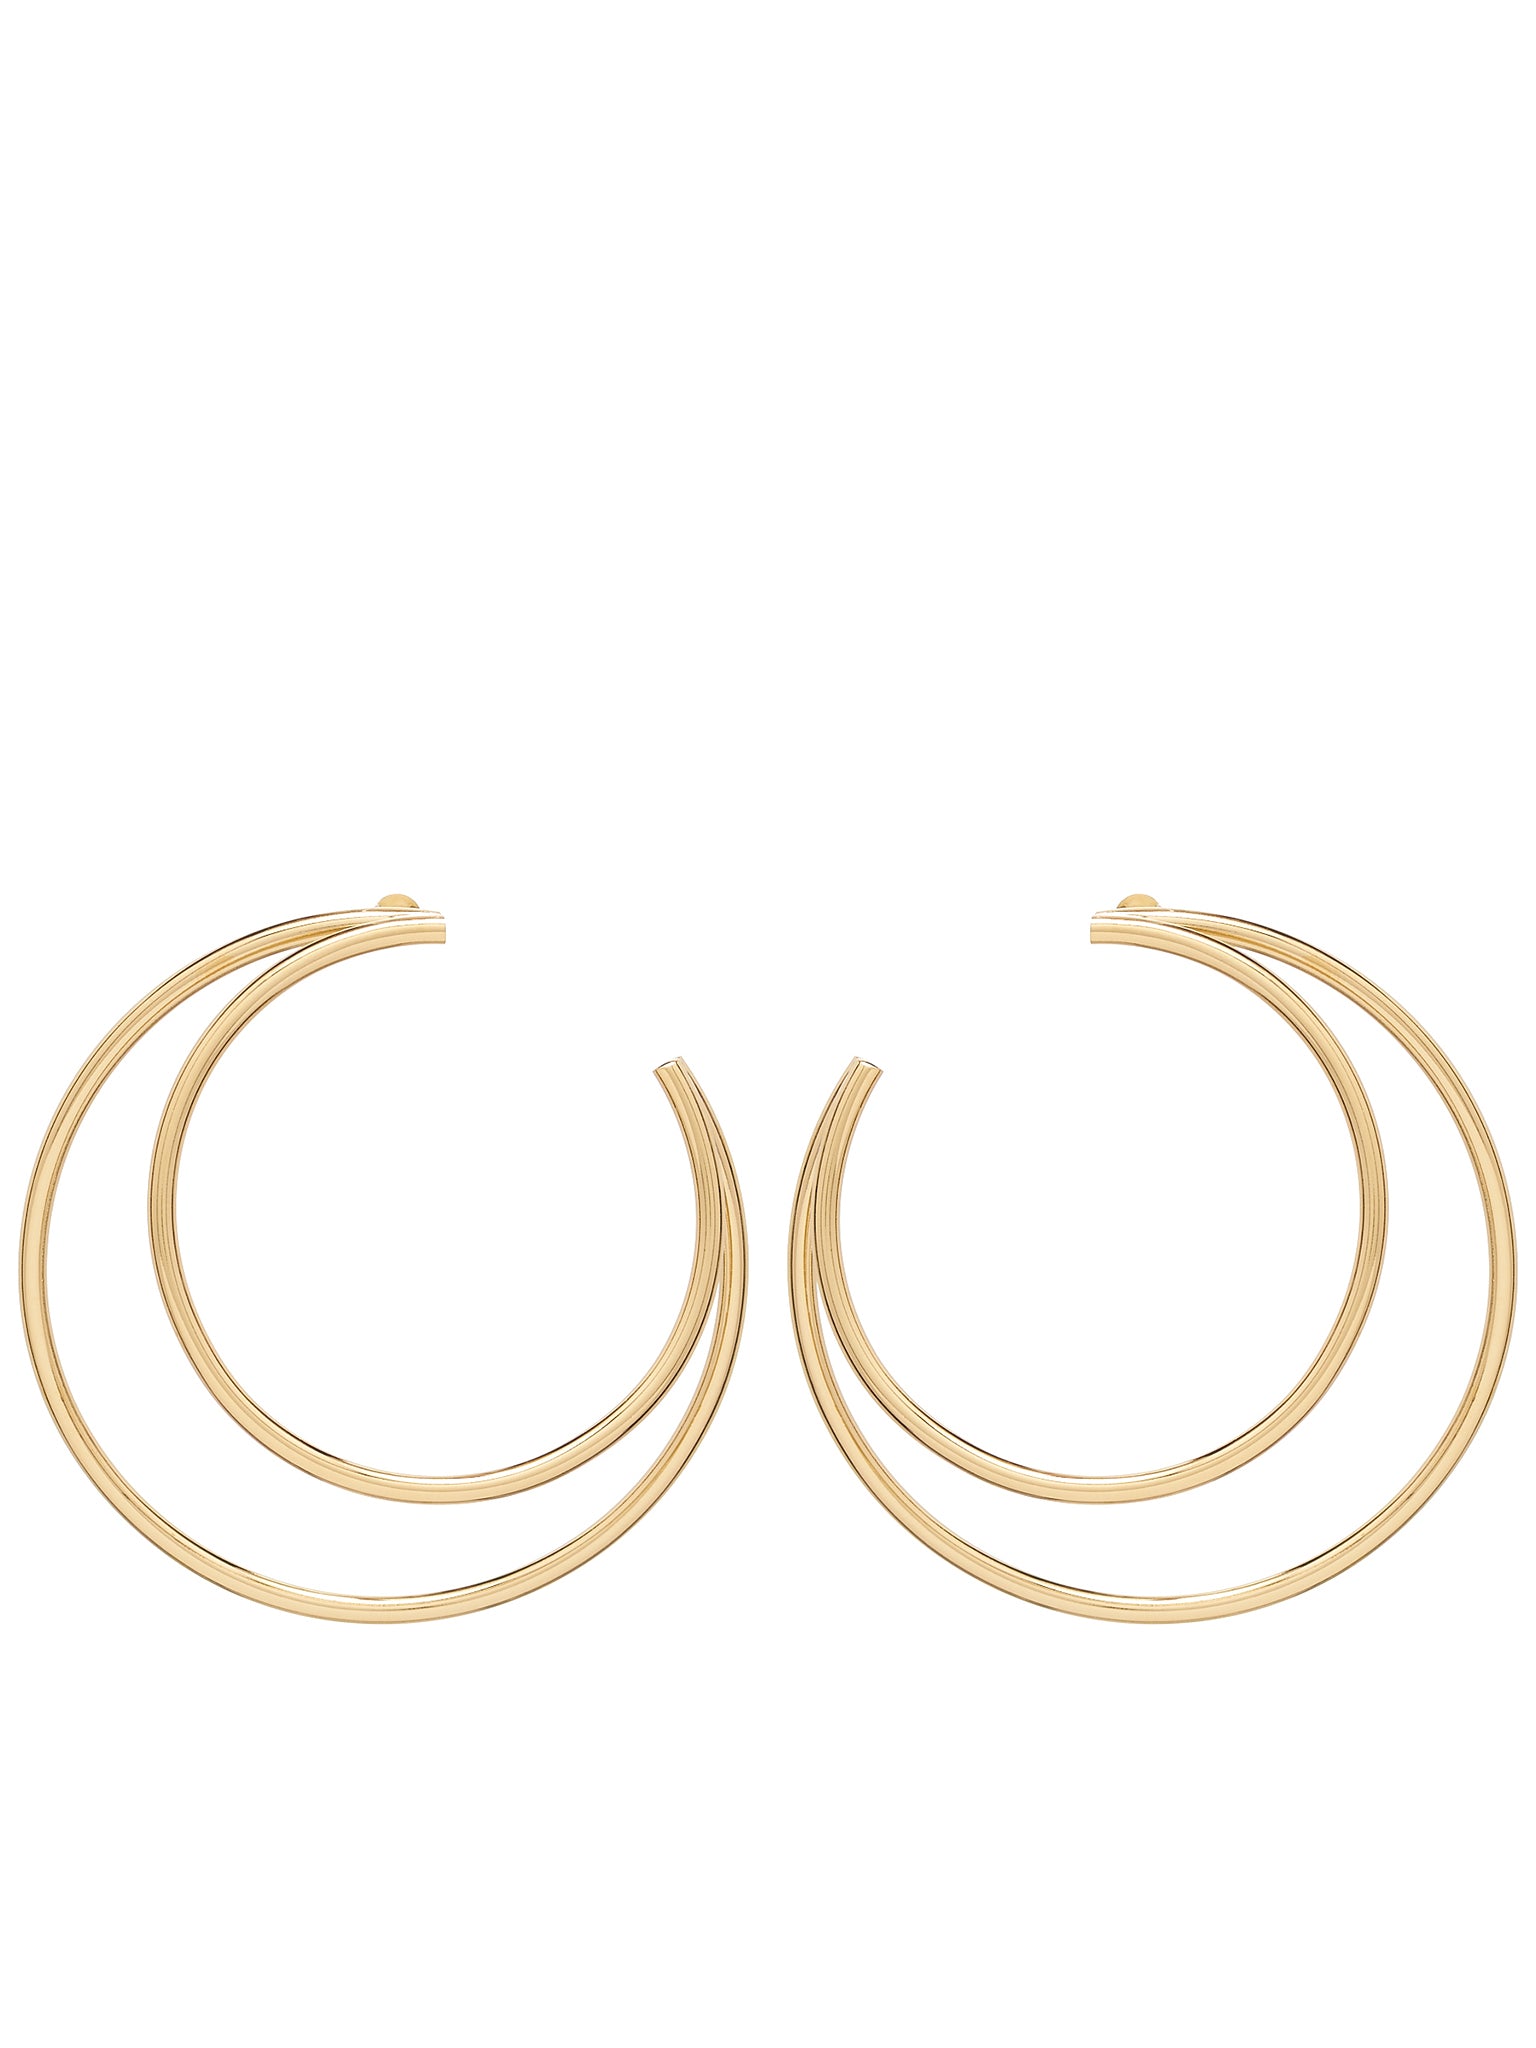 Small Moon Earrings (JW150W-OTHTR012-GOLD)